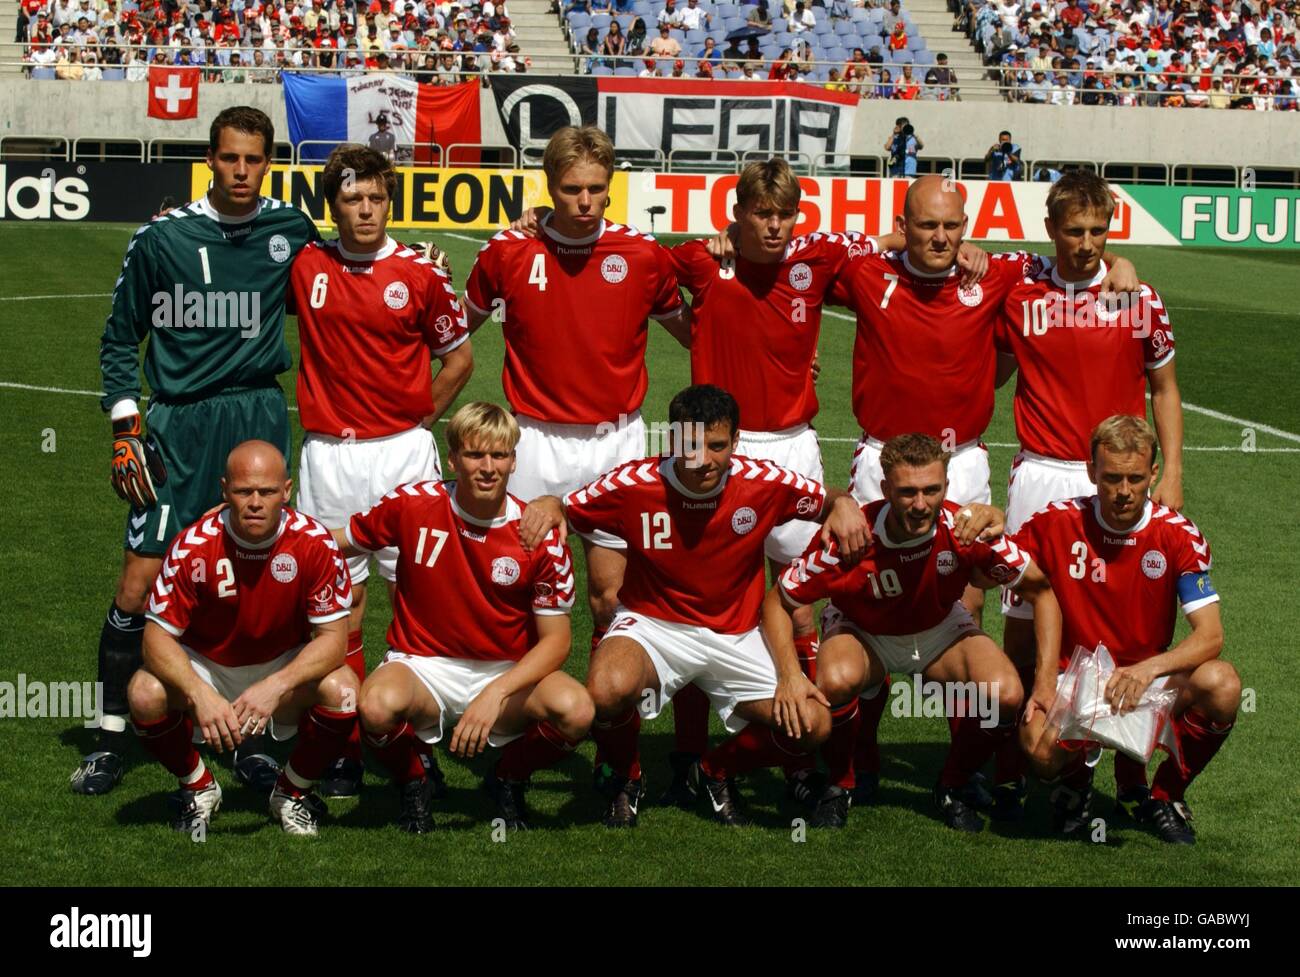 Football - coupe du monde de la FIFA 2002 - Groupe A - Danemark / France. Groupe d'équipe du Danemark Banque D'Images